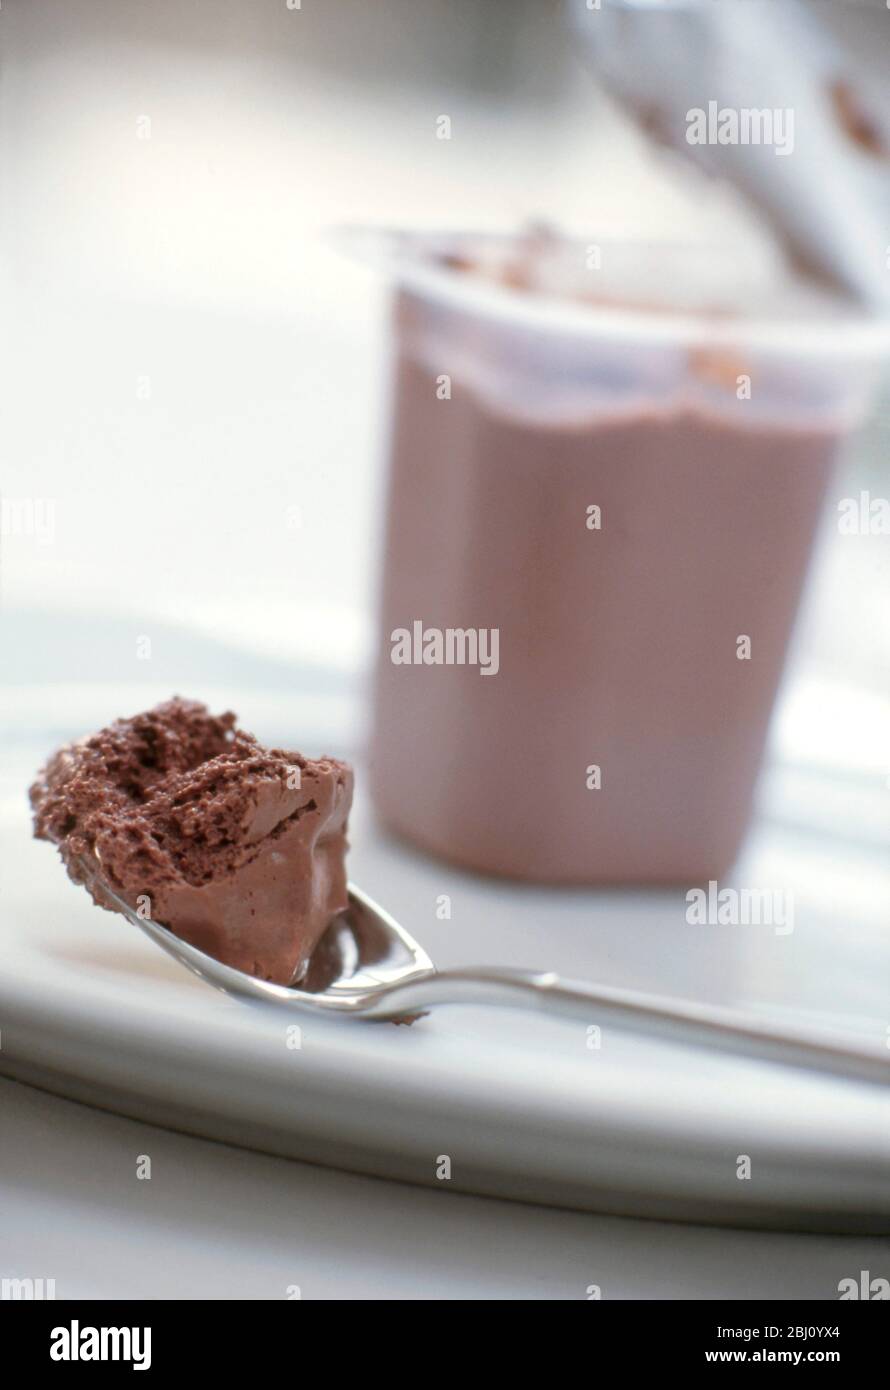 Una cucharada de chocolate ligero compró mousse con bañera abierta detrás en un plato blanco - Foto de stock